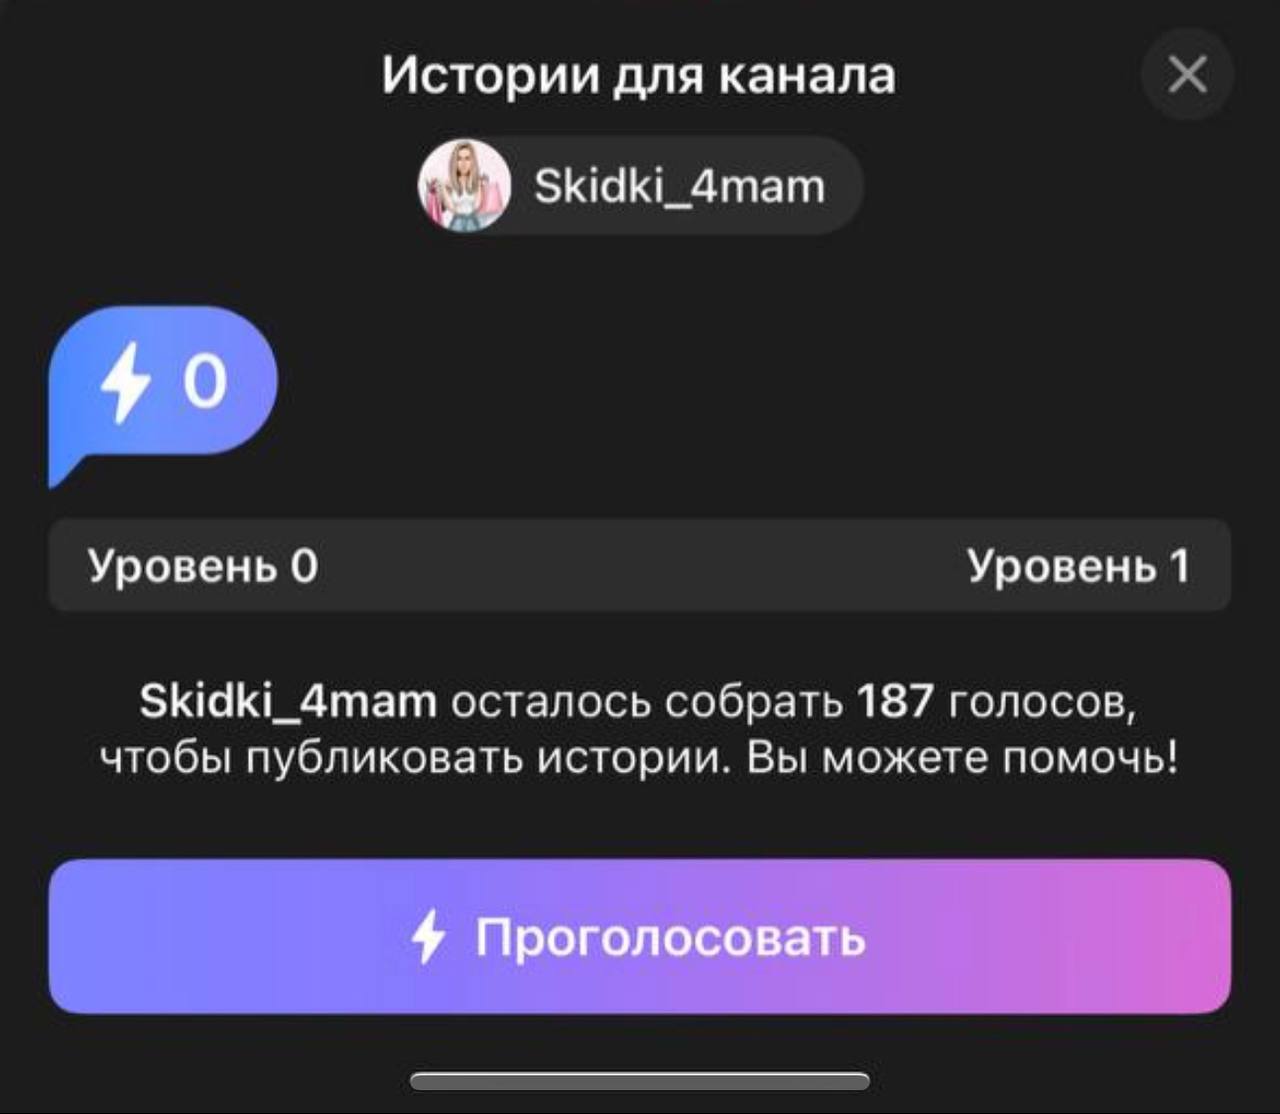 Обновить телеграмм на андроид до последней версии бесплатно на русском языке без регистрации как фото 101